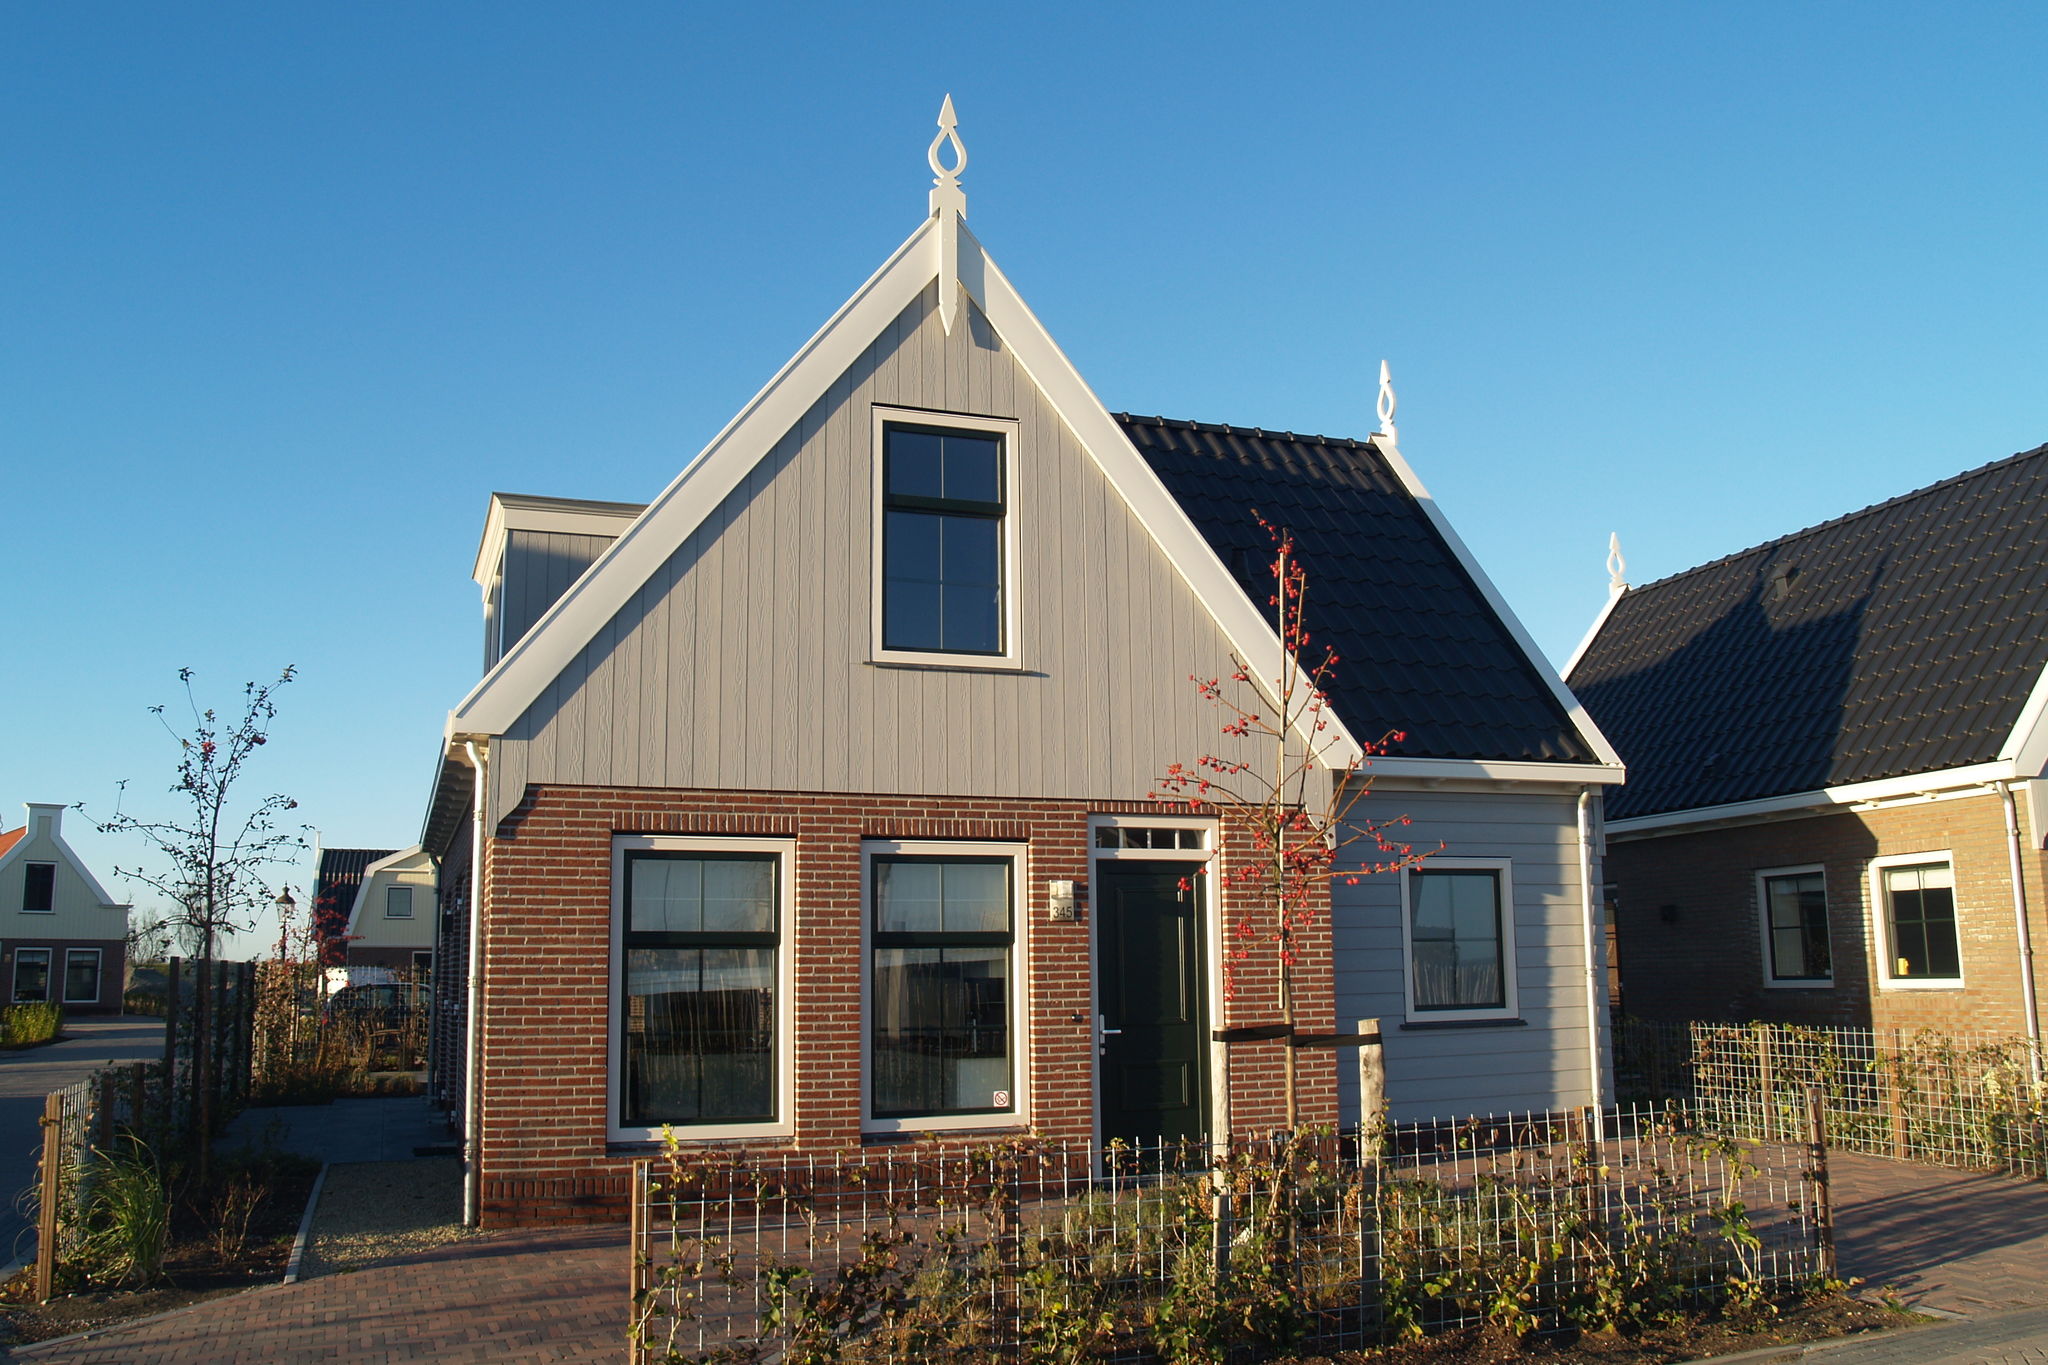 Freistehendes Ferienhaus am Markermeer, nahe Amsterdam